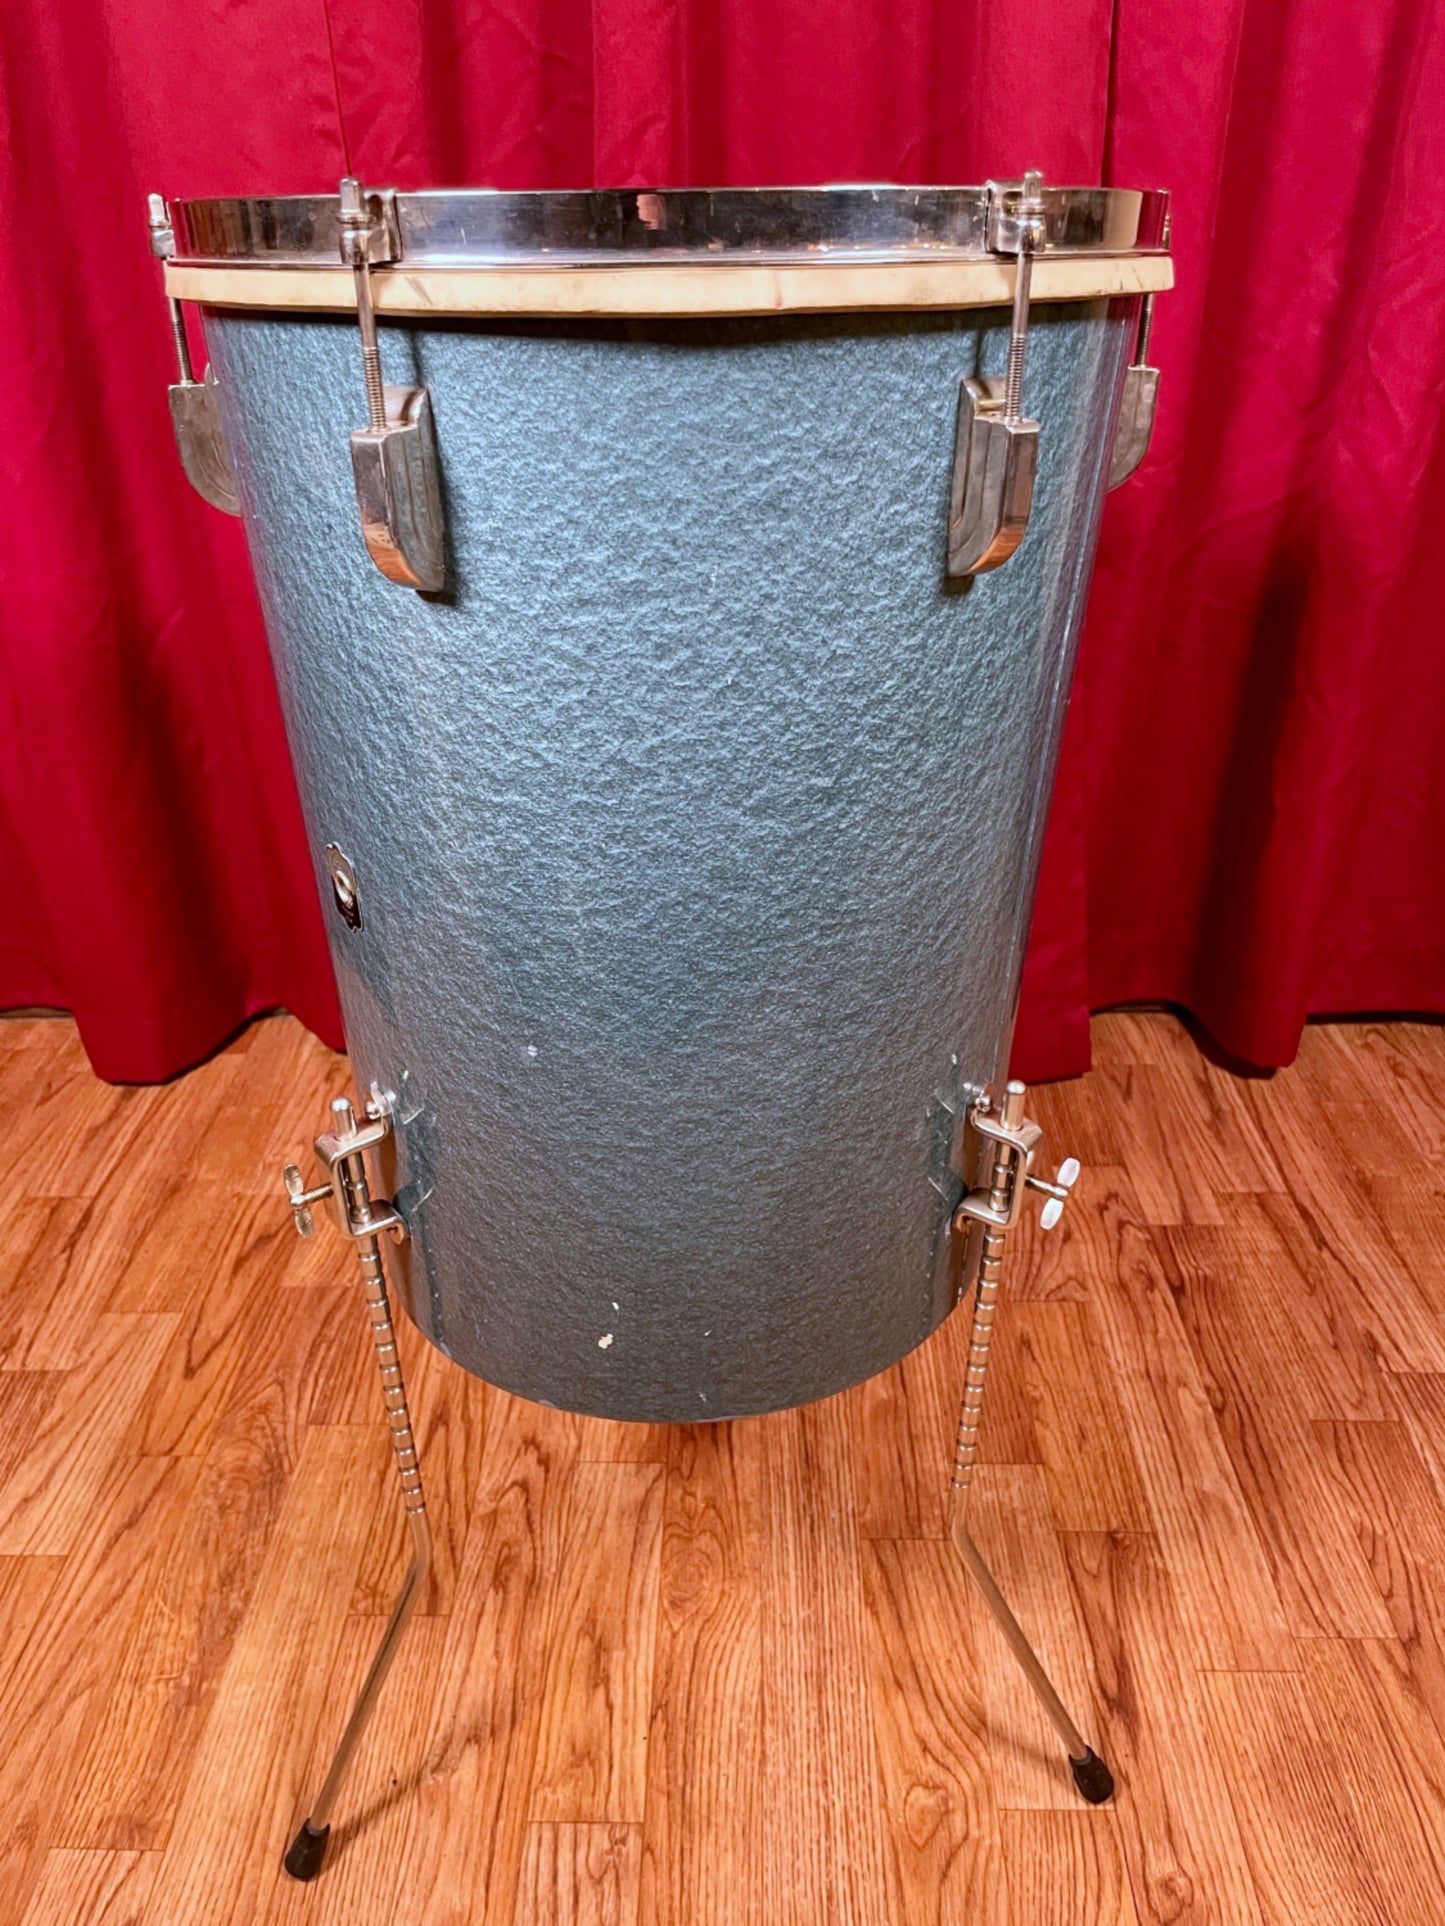 1949 Leedy 14x18 No. 8016 Conga-Tom Drum Antique Blue